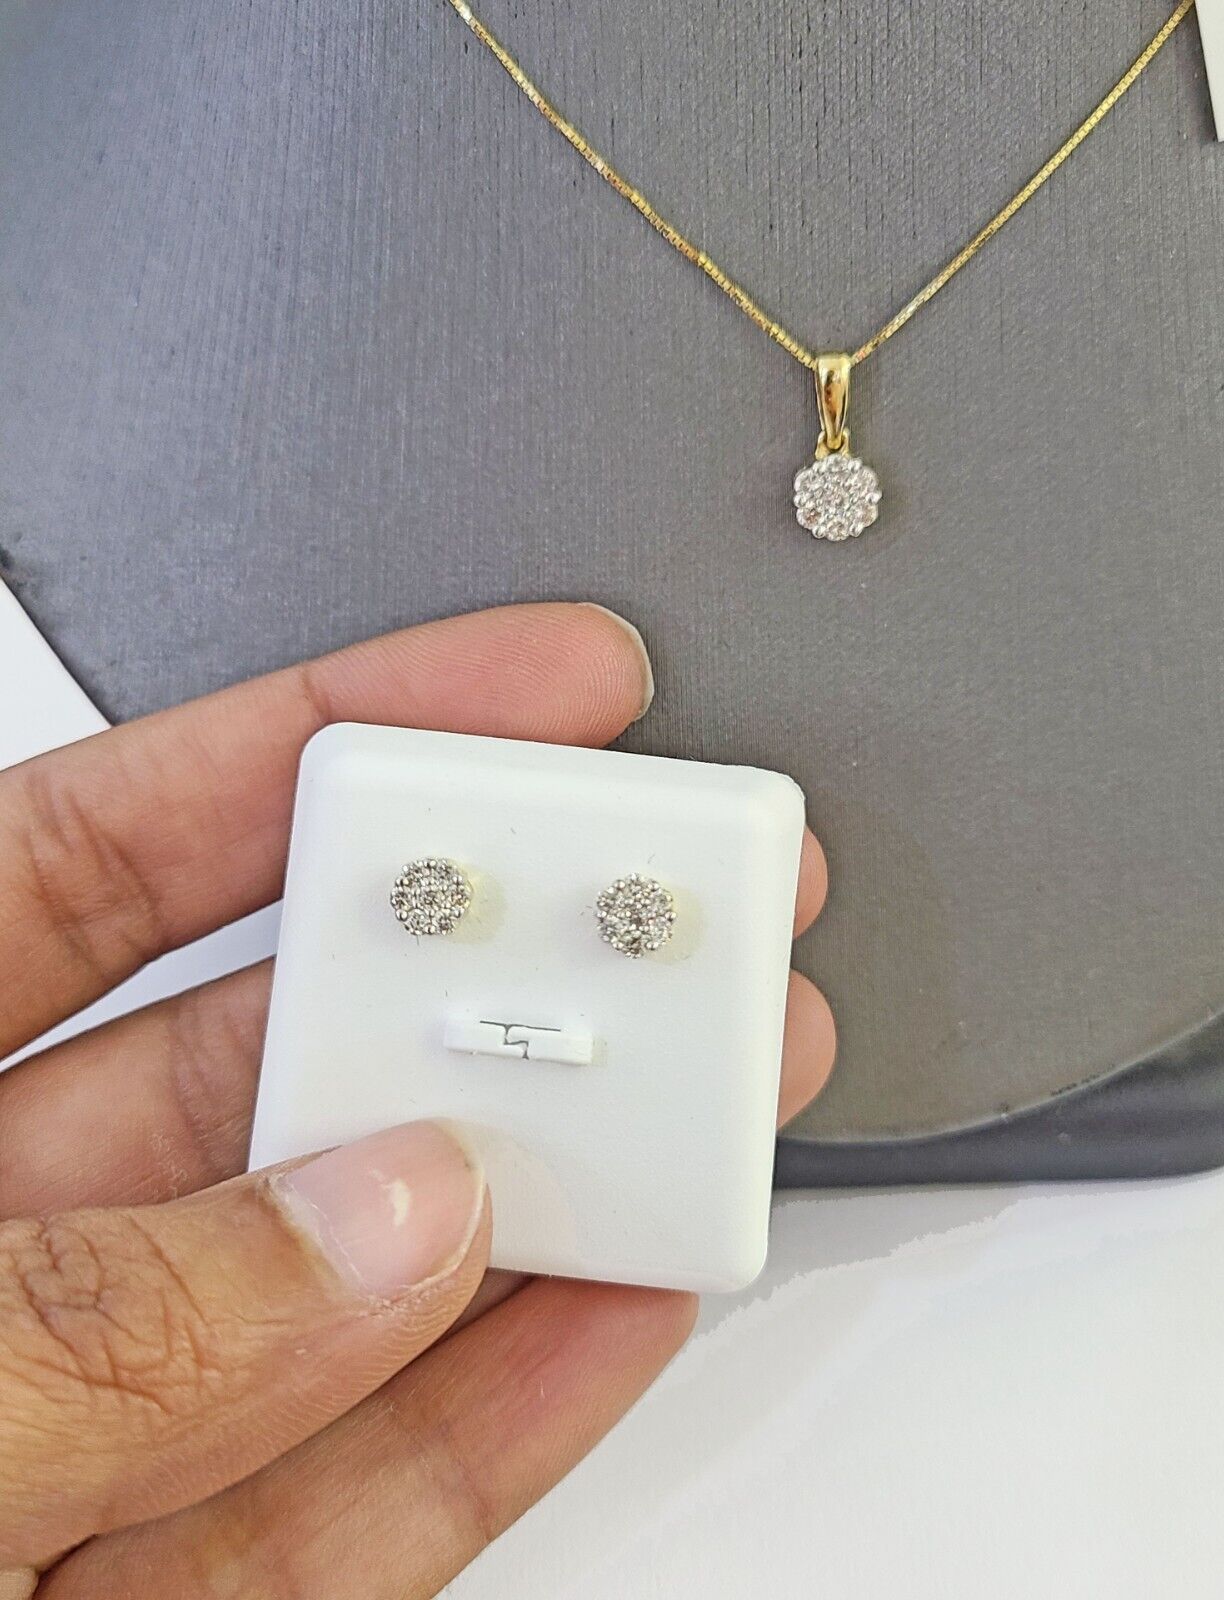 10k Gold Diamond Flower Earrings pendant Box Chain SET 22" Inch 1mm For Ladies